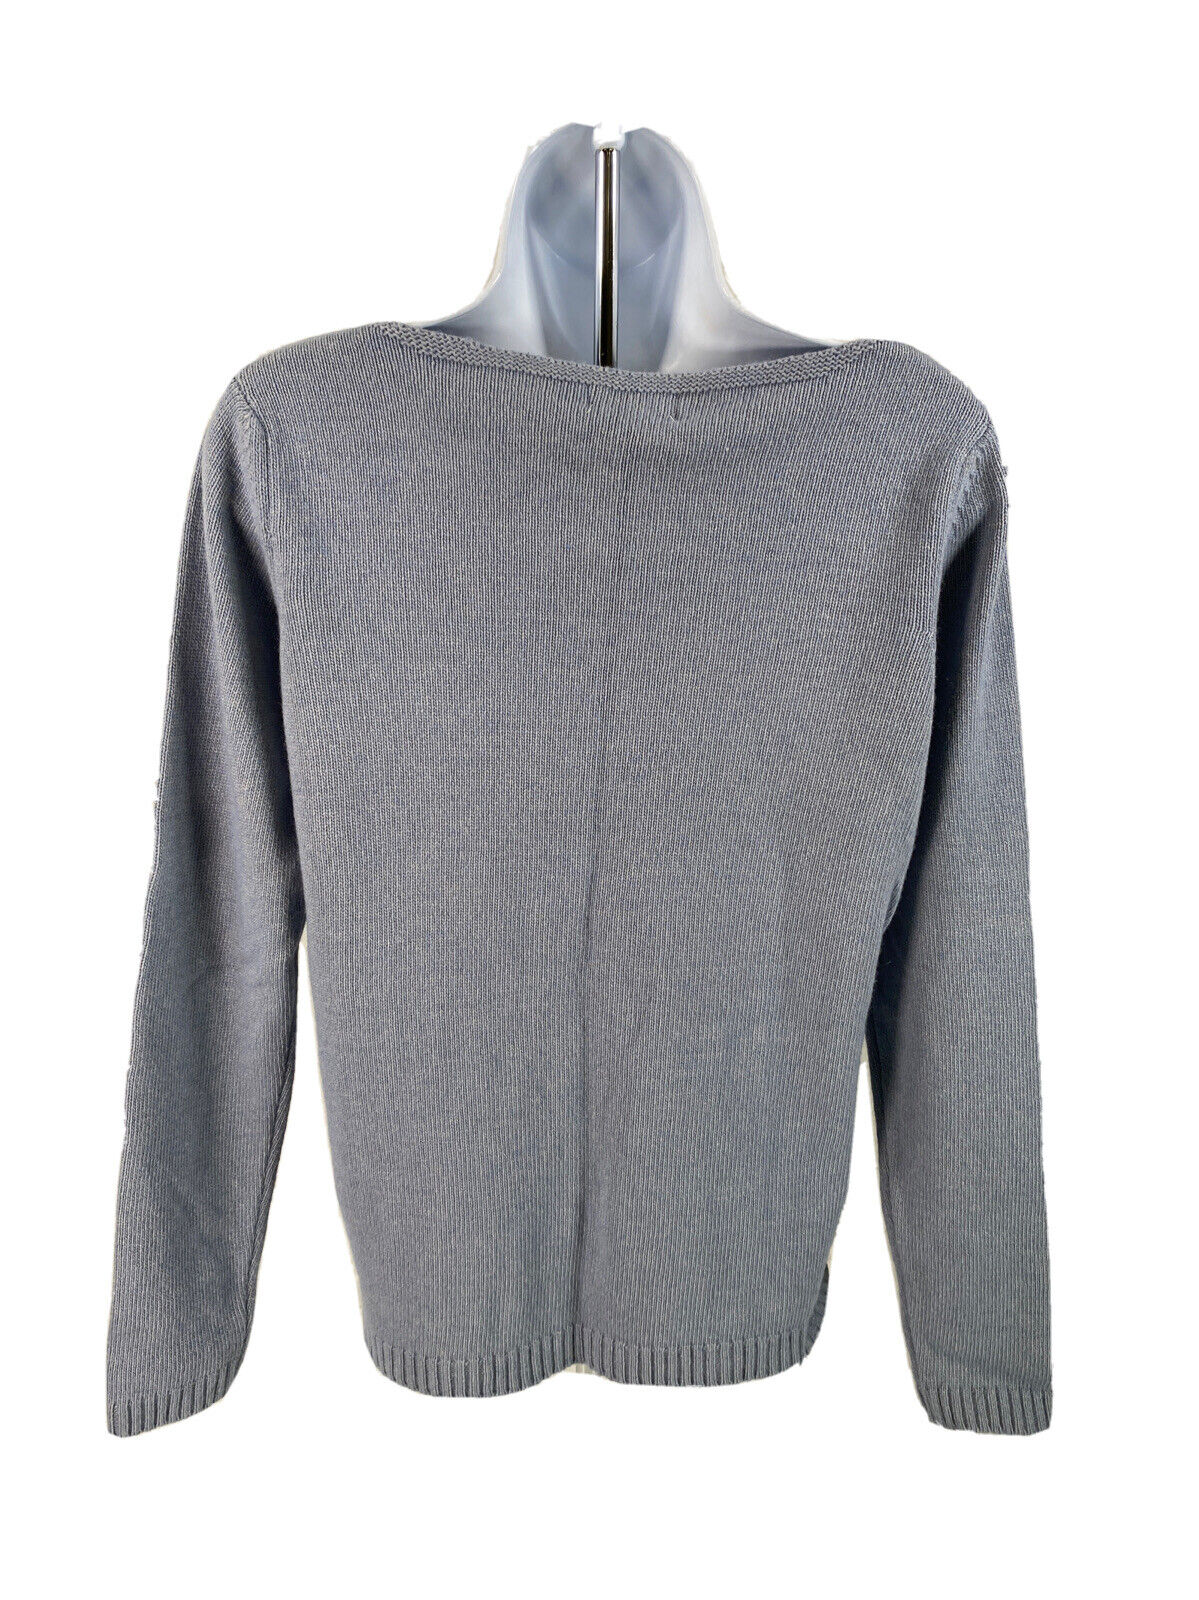 New Bendetta B Women's Blue/Gray Button Side Wool Knit Sweater - M